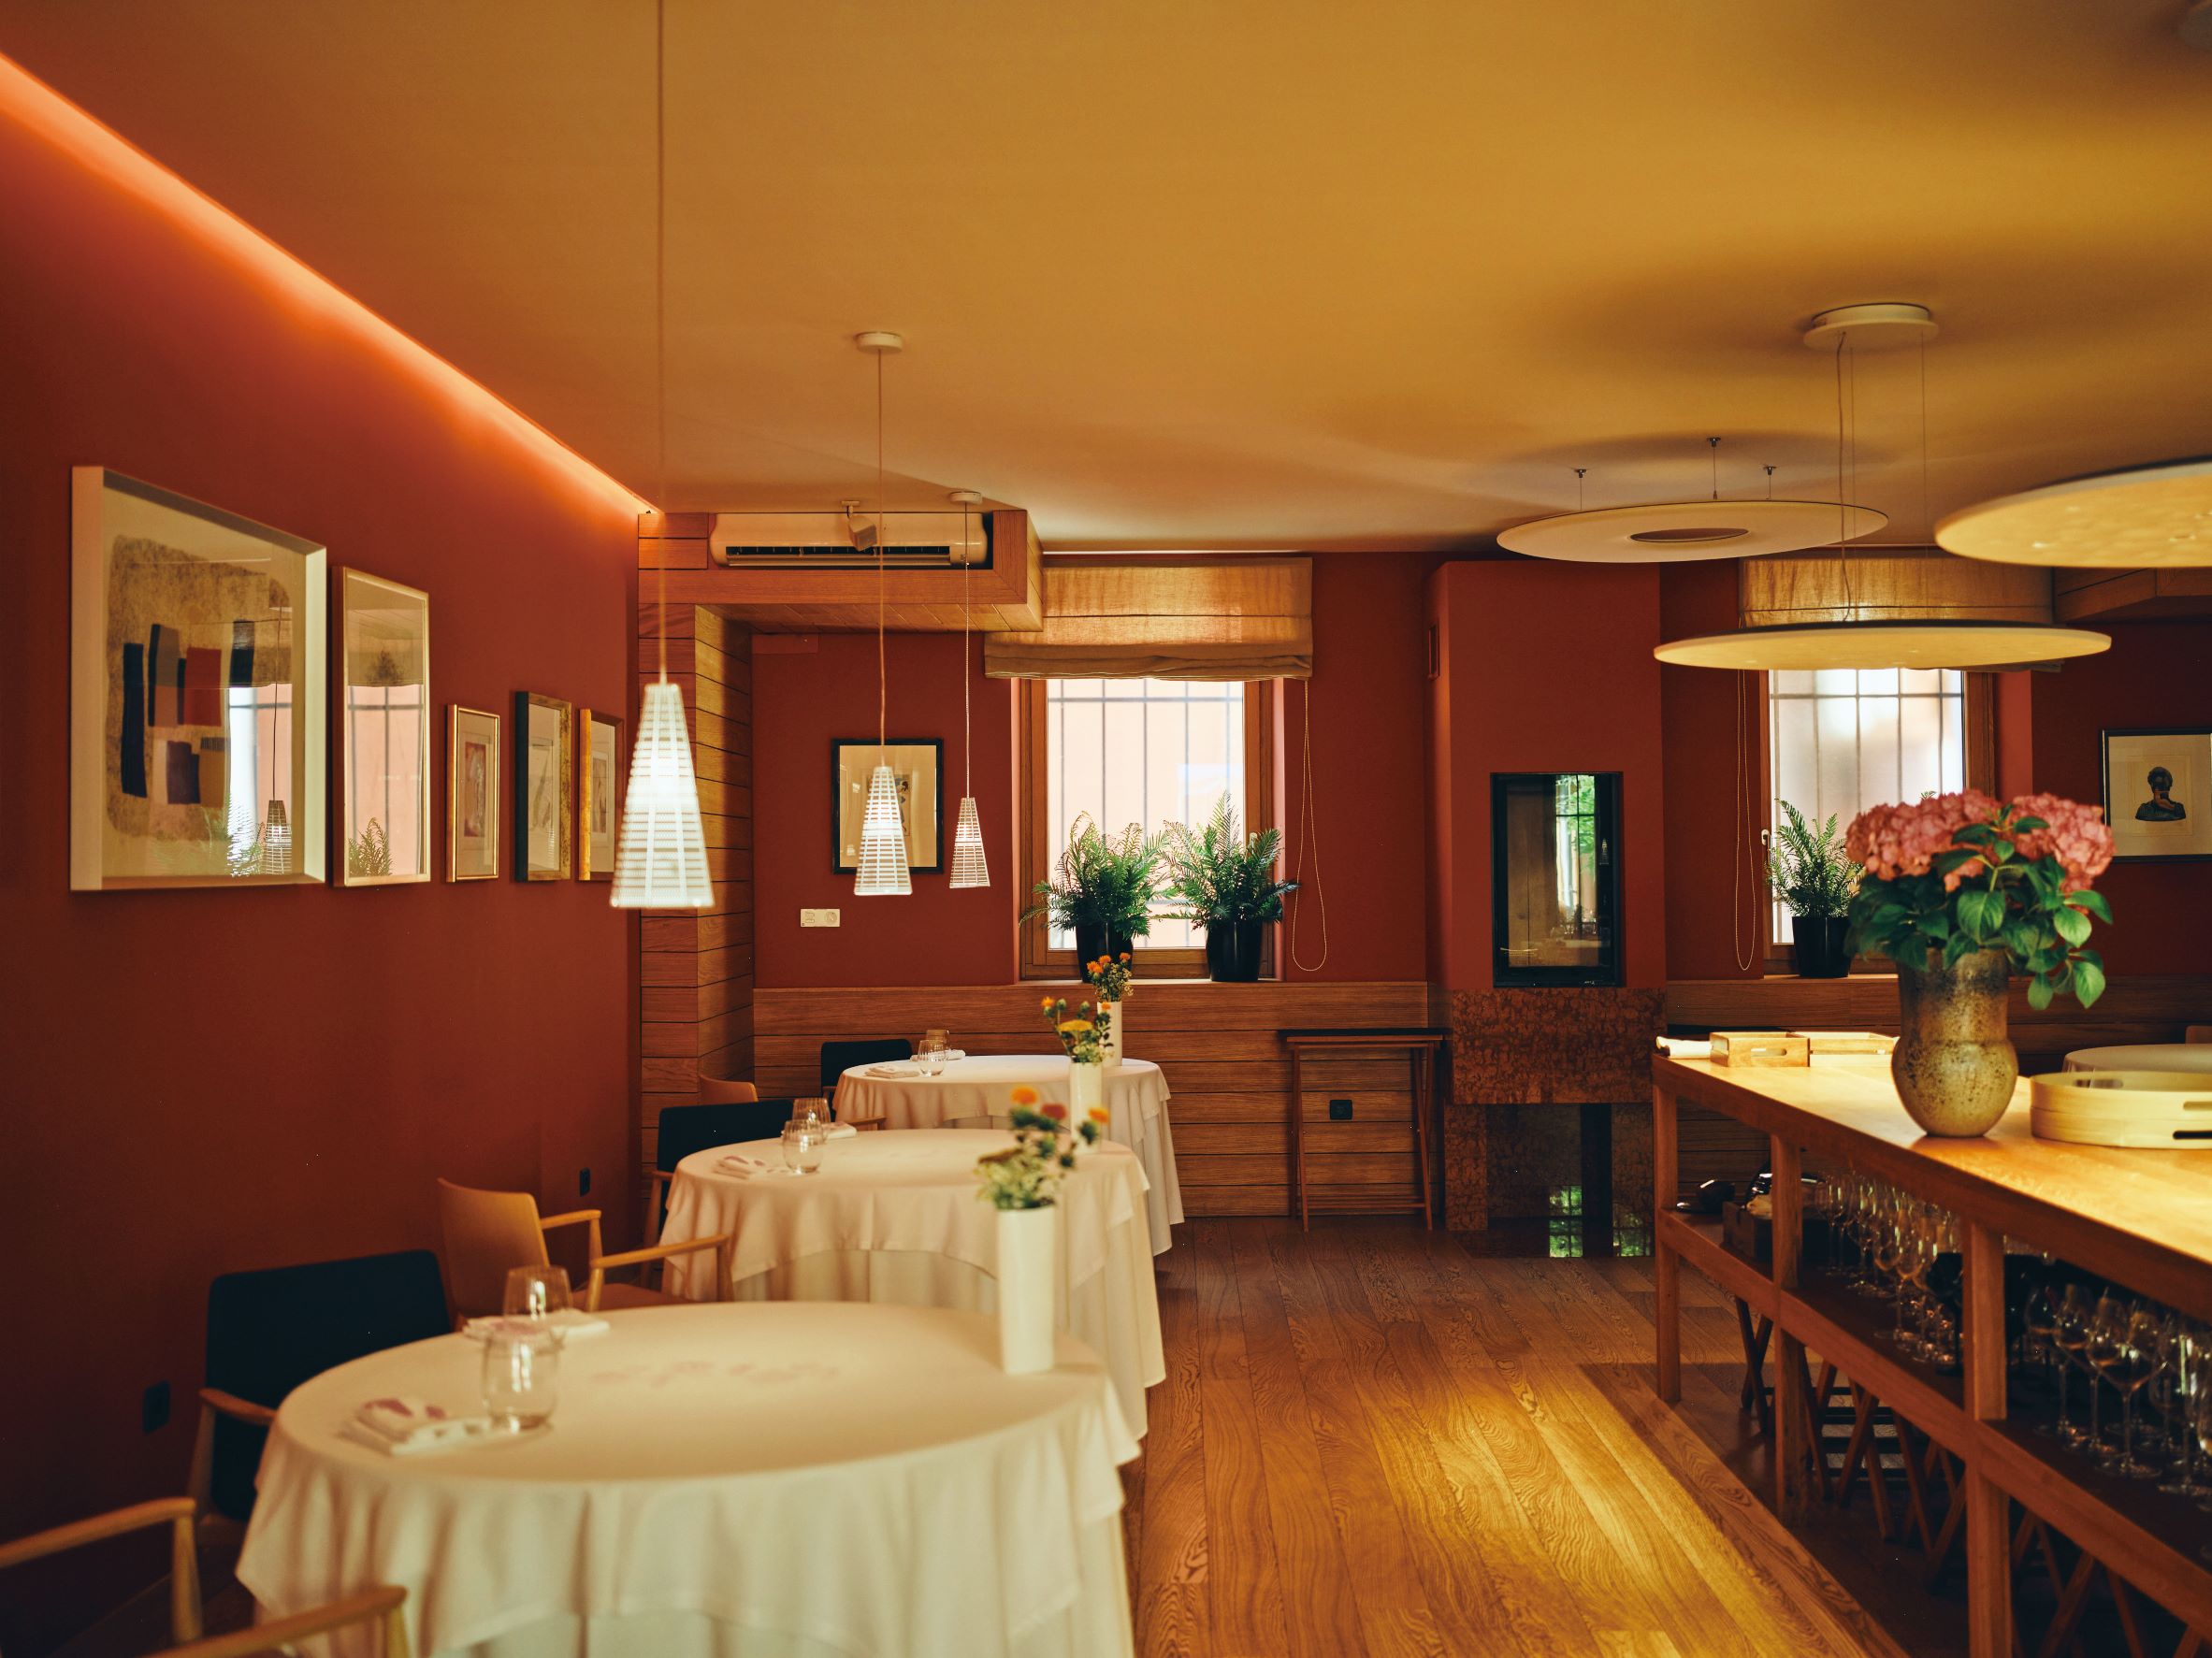 在 Hiša Franko 餐廳裡，以磚紅色牆面、原木地板和木質桌椅，妝點出溫馨的空間氛圍。